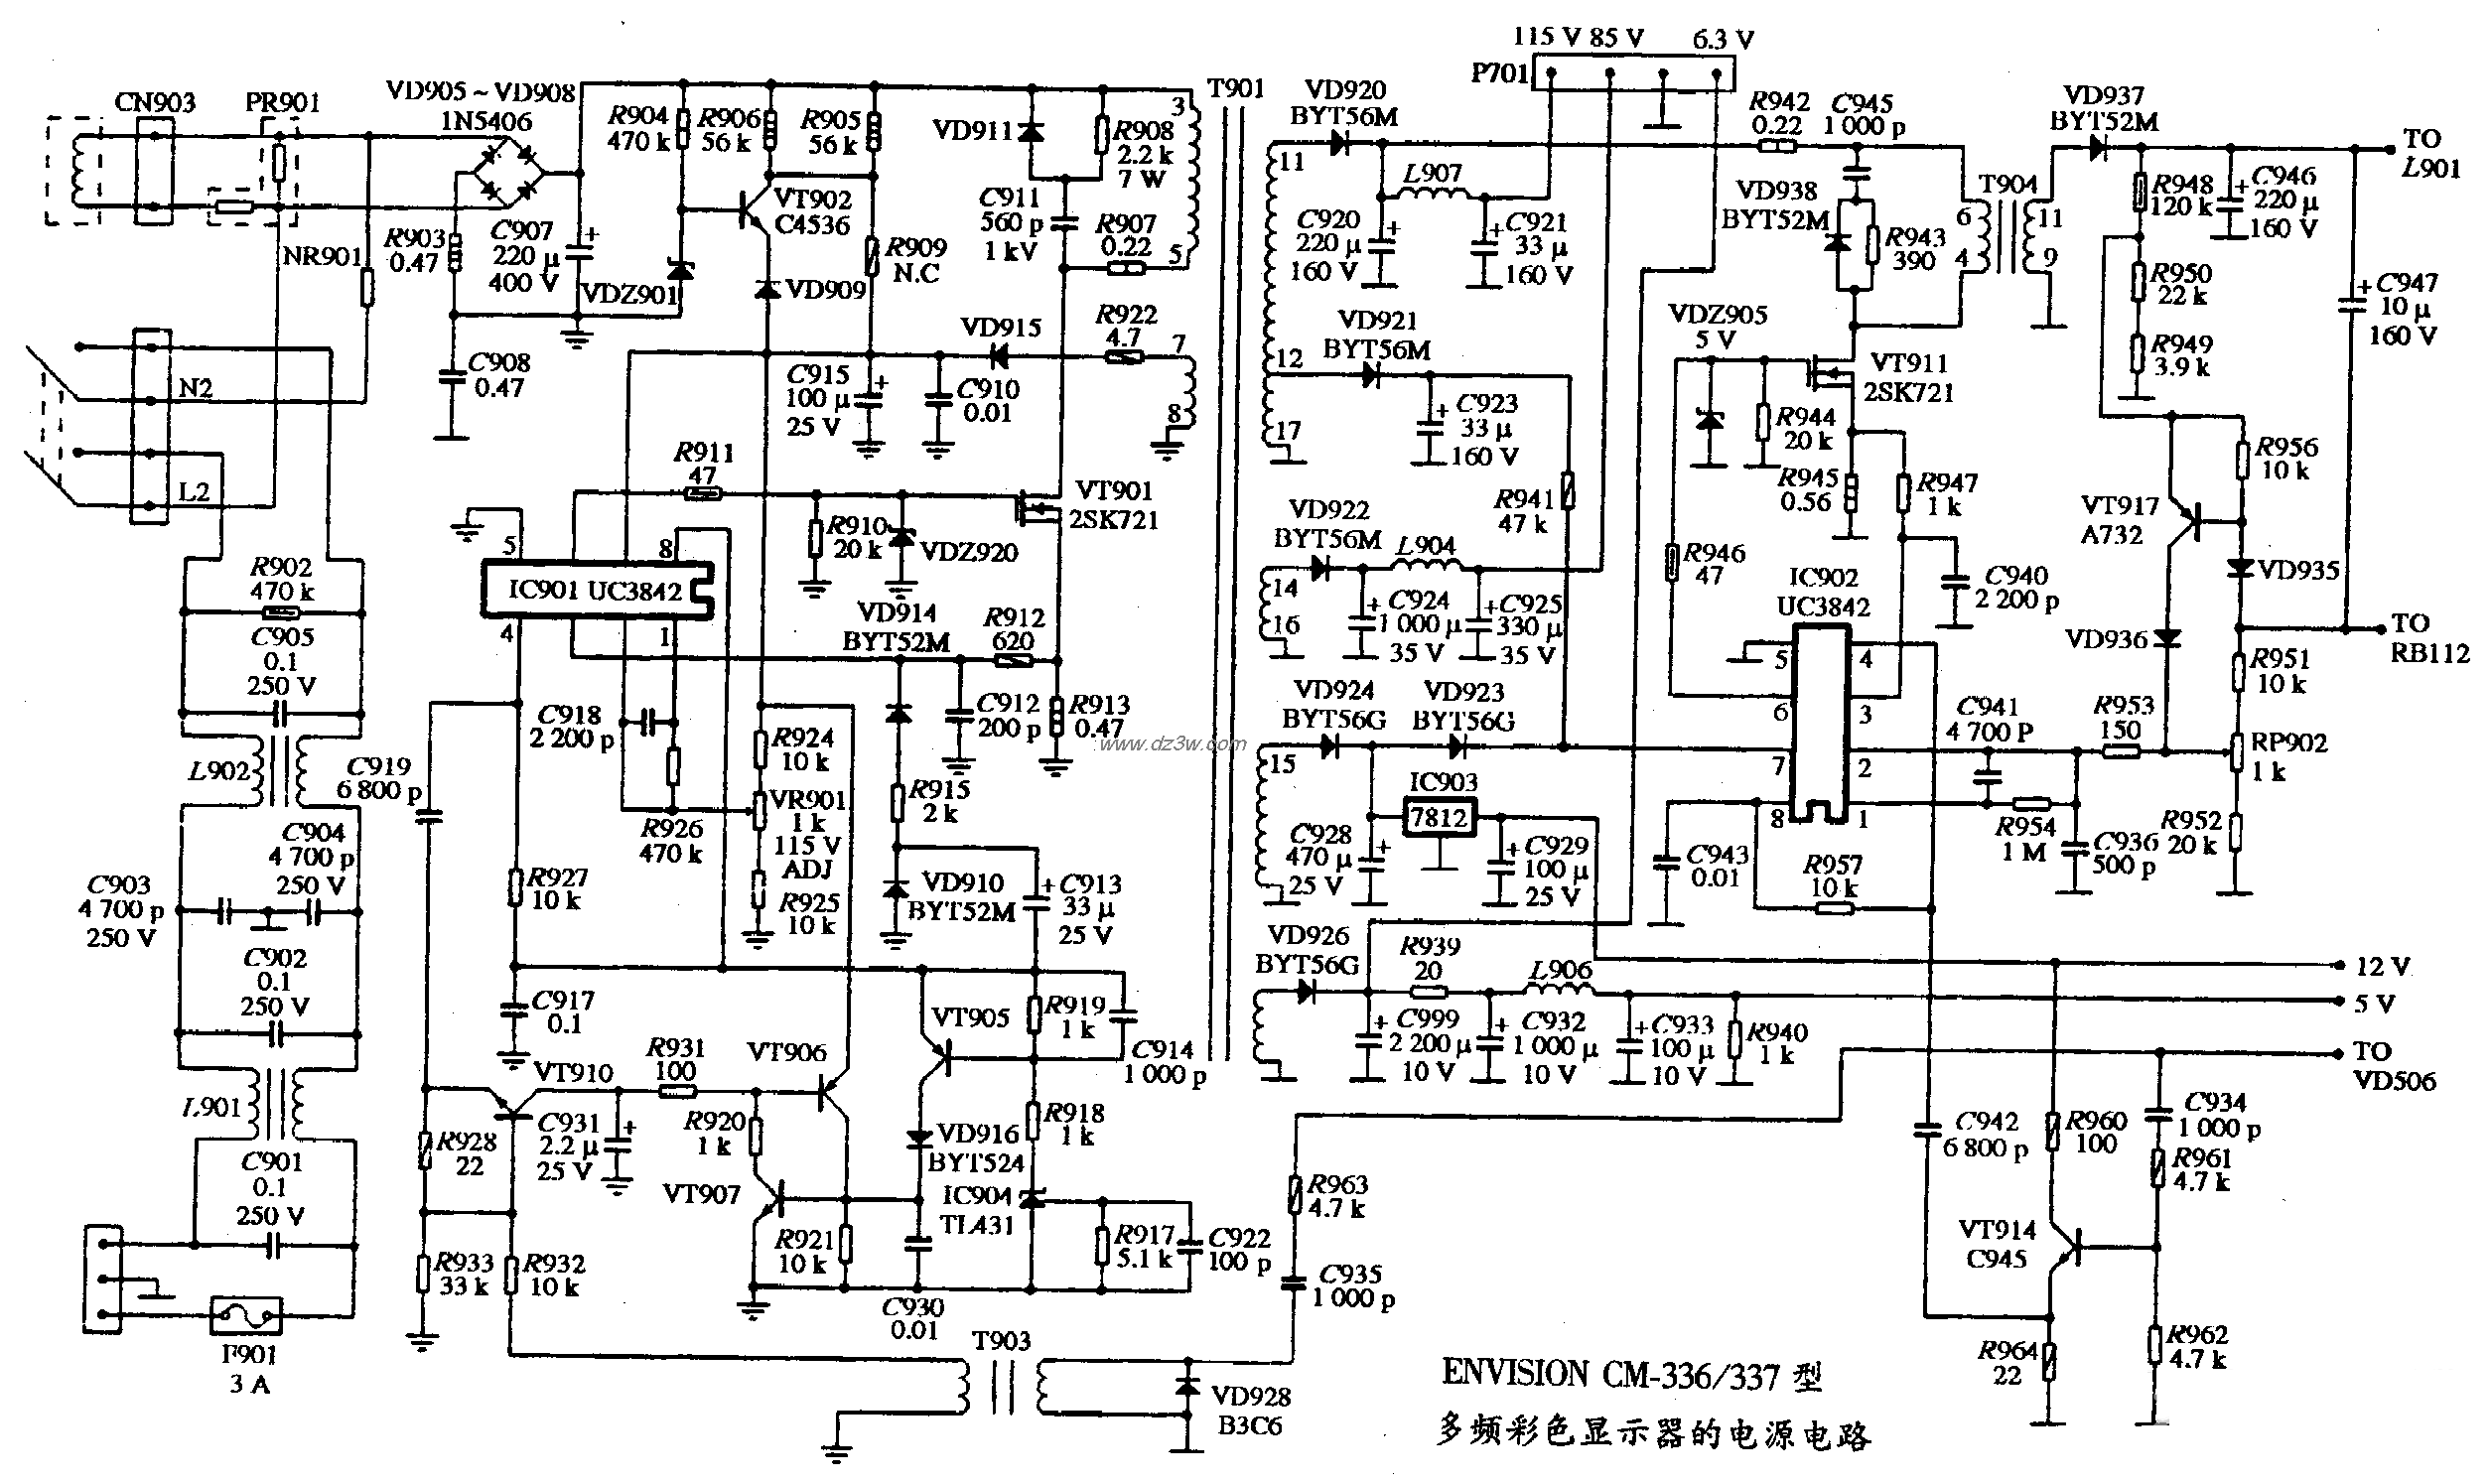 ENVISION CM-336/337型多頻彩色顯示器的電源電路圖